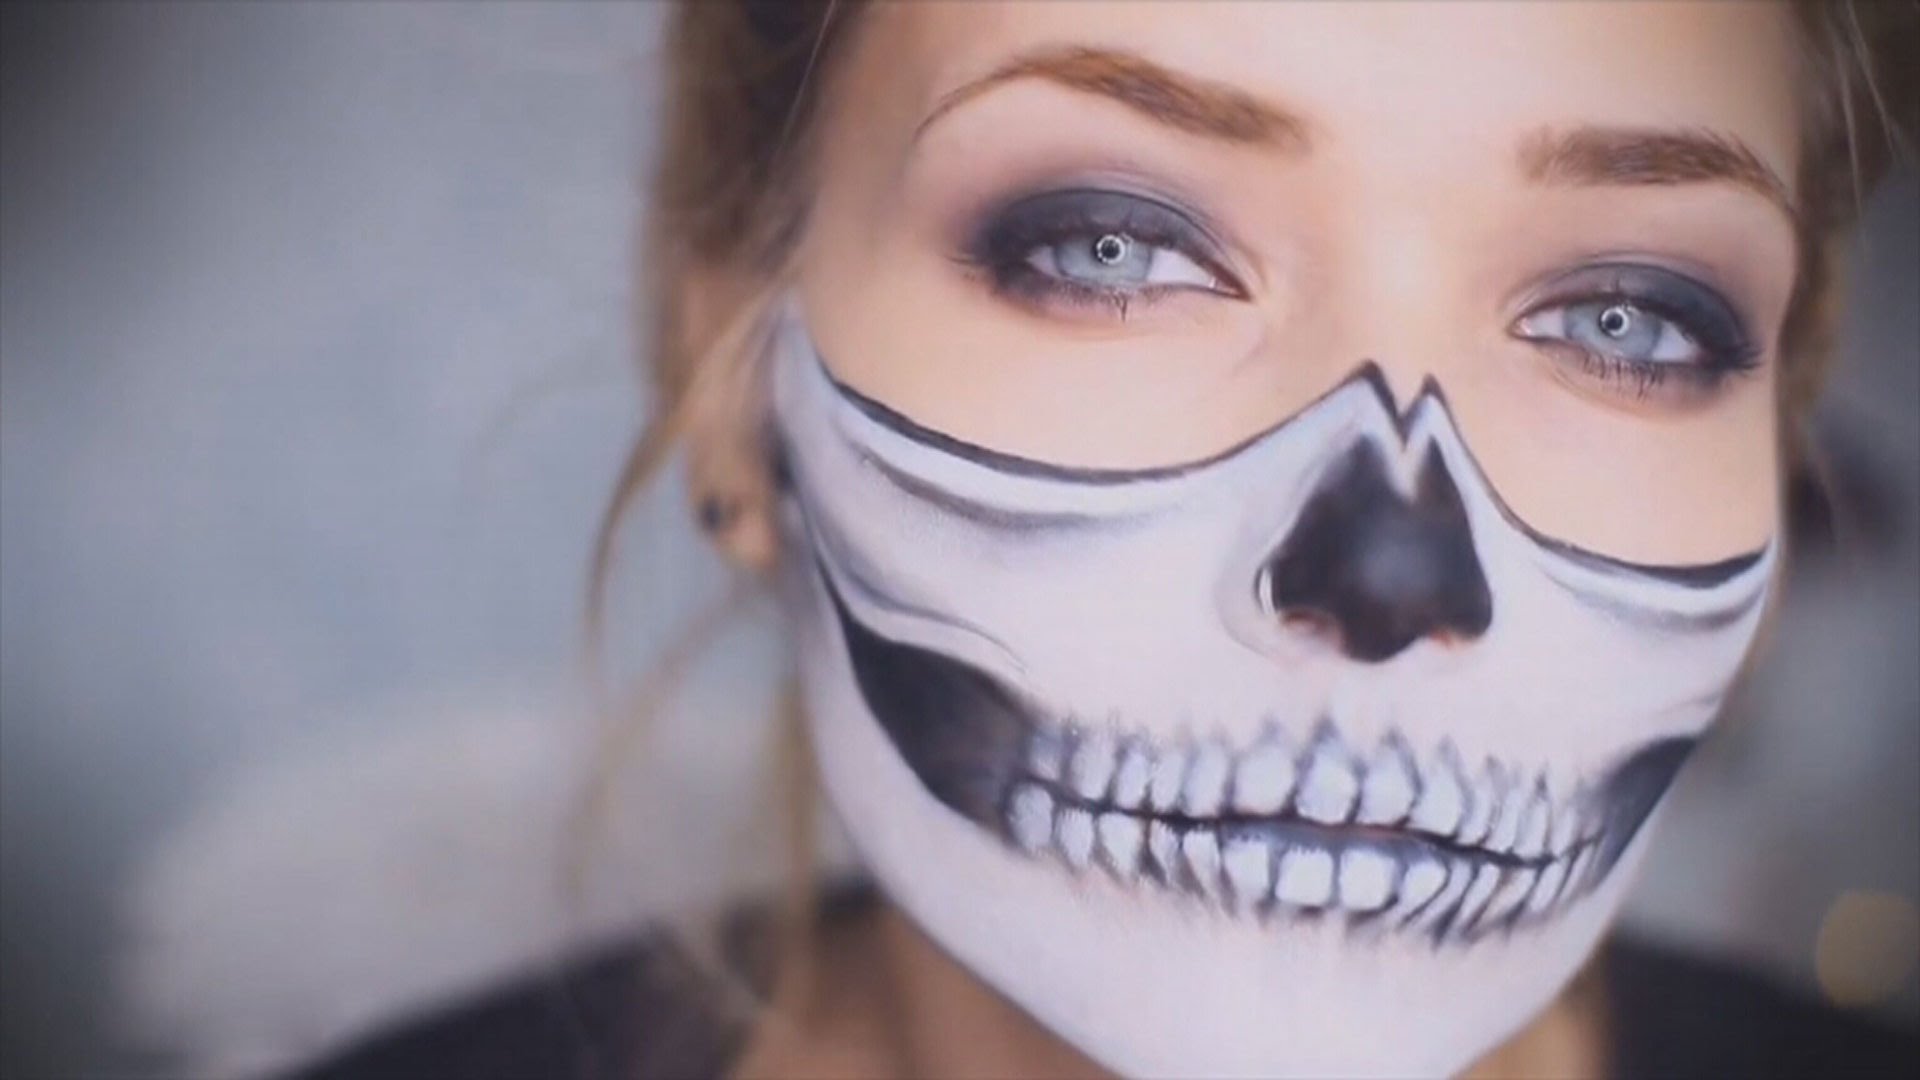 Зомби макияж на хэллоуин. Как сделать крутой грим своими руками в домашних условиях.